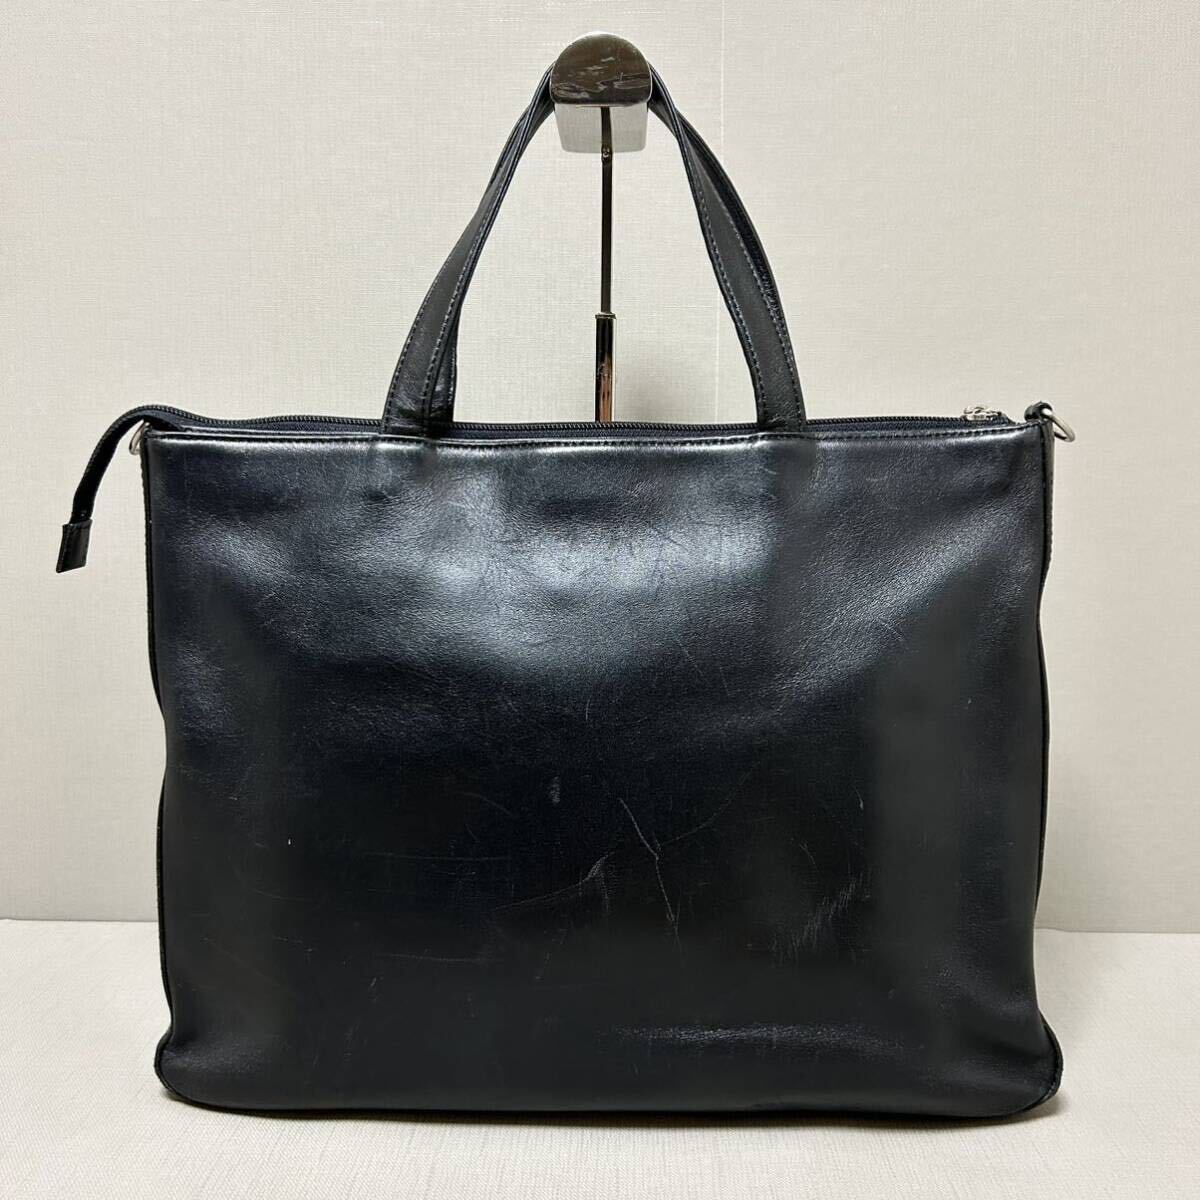 1 иен BURBERRY Burberry портфель портфель мужской noba проверка A4/PC место хранения возможно независимый кожа натуральная кожа черный чёрный Logo type вдавлено .